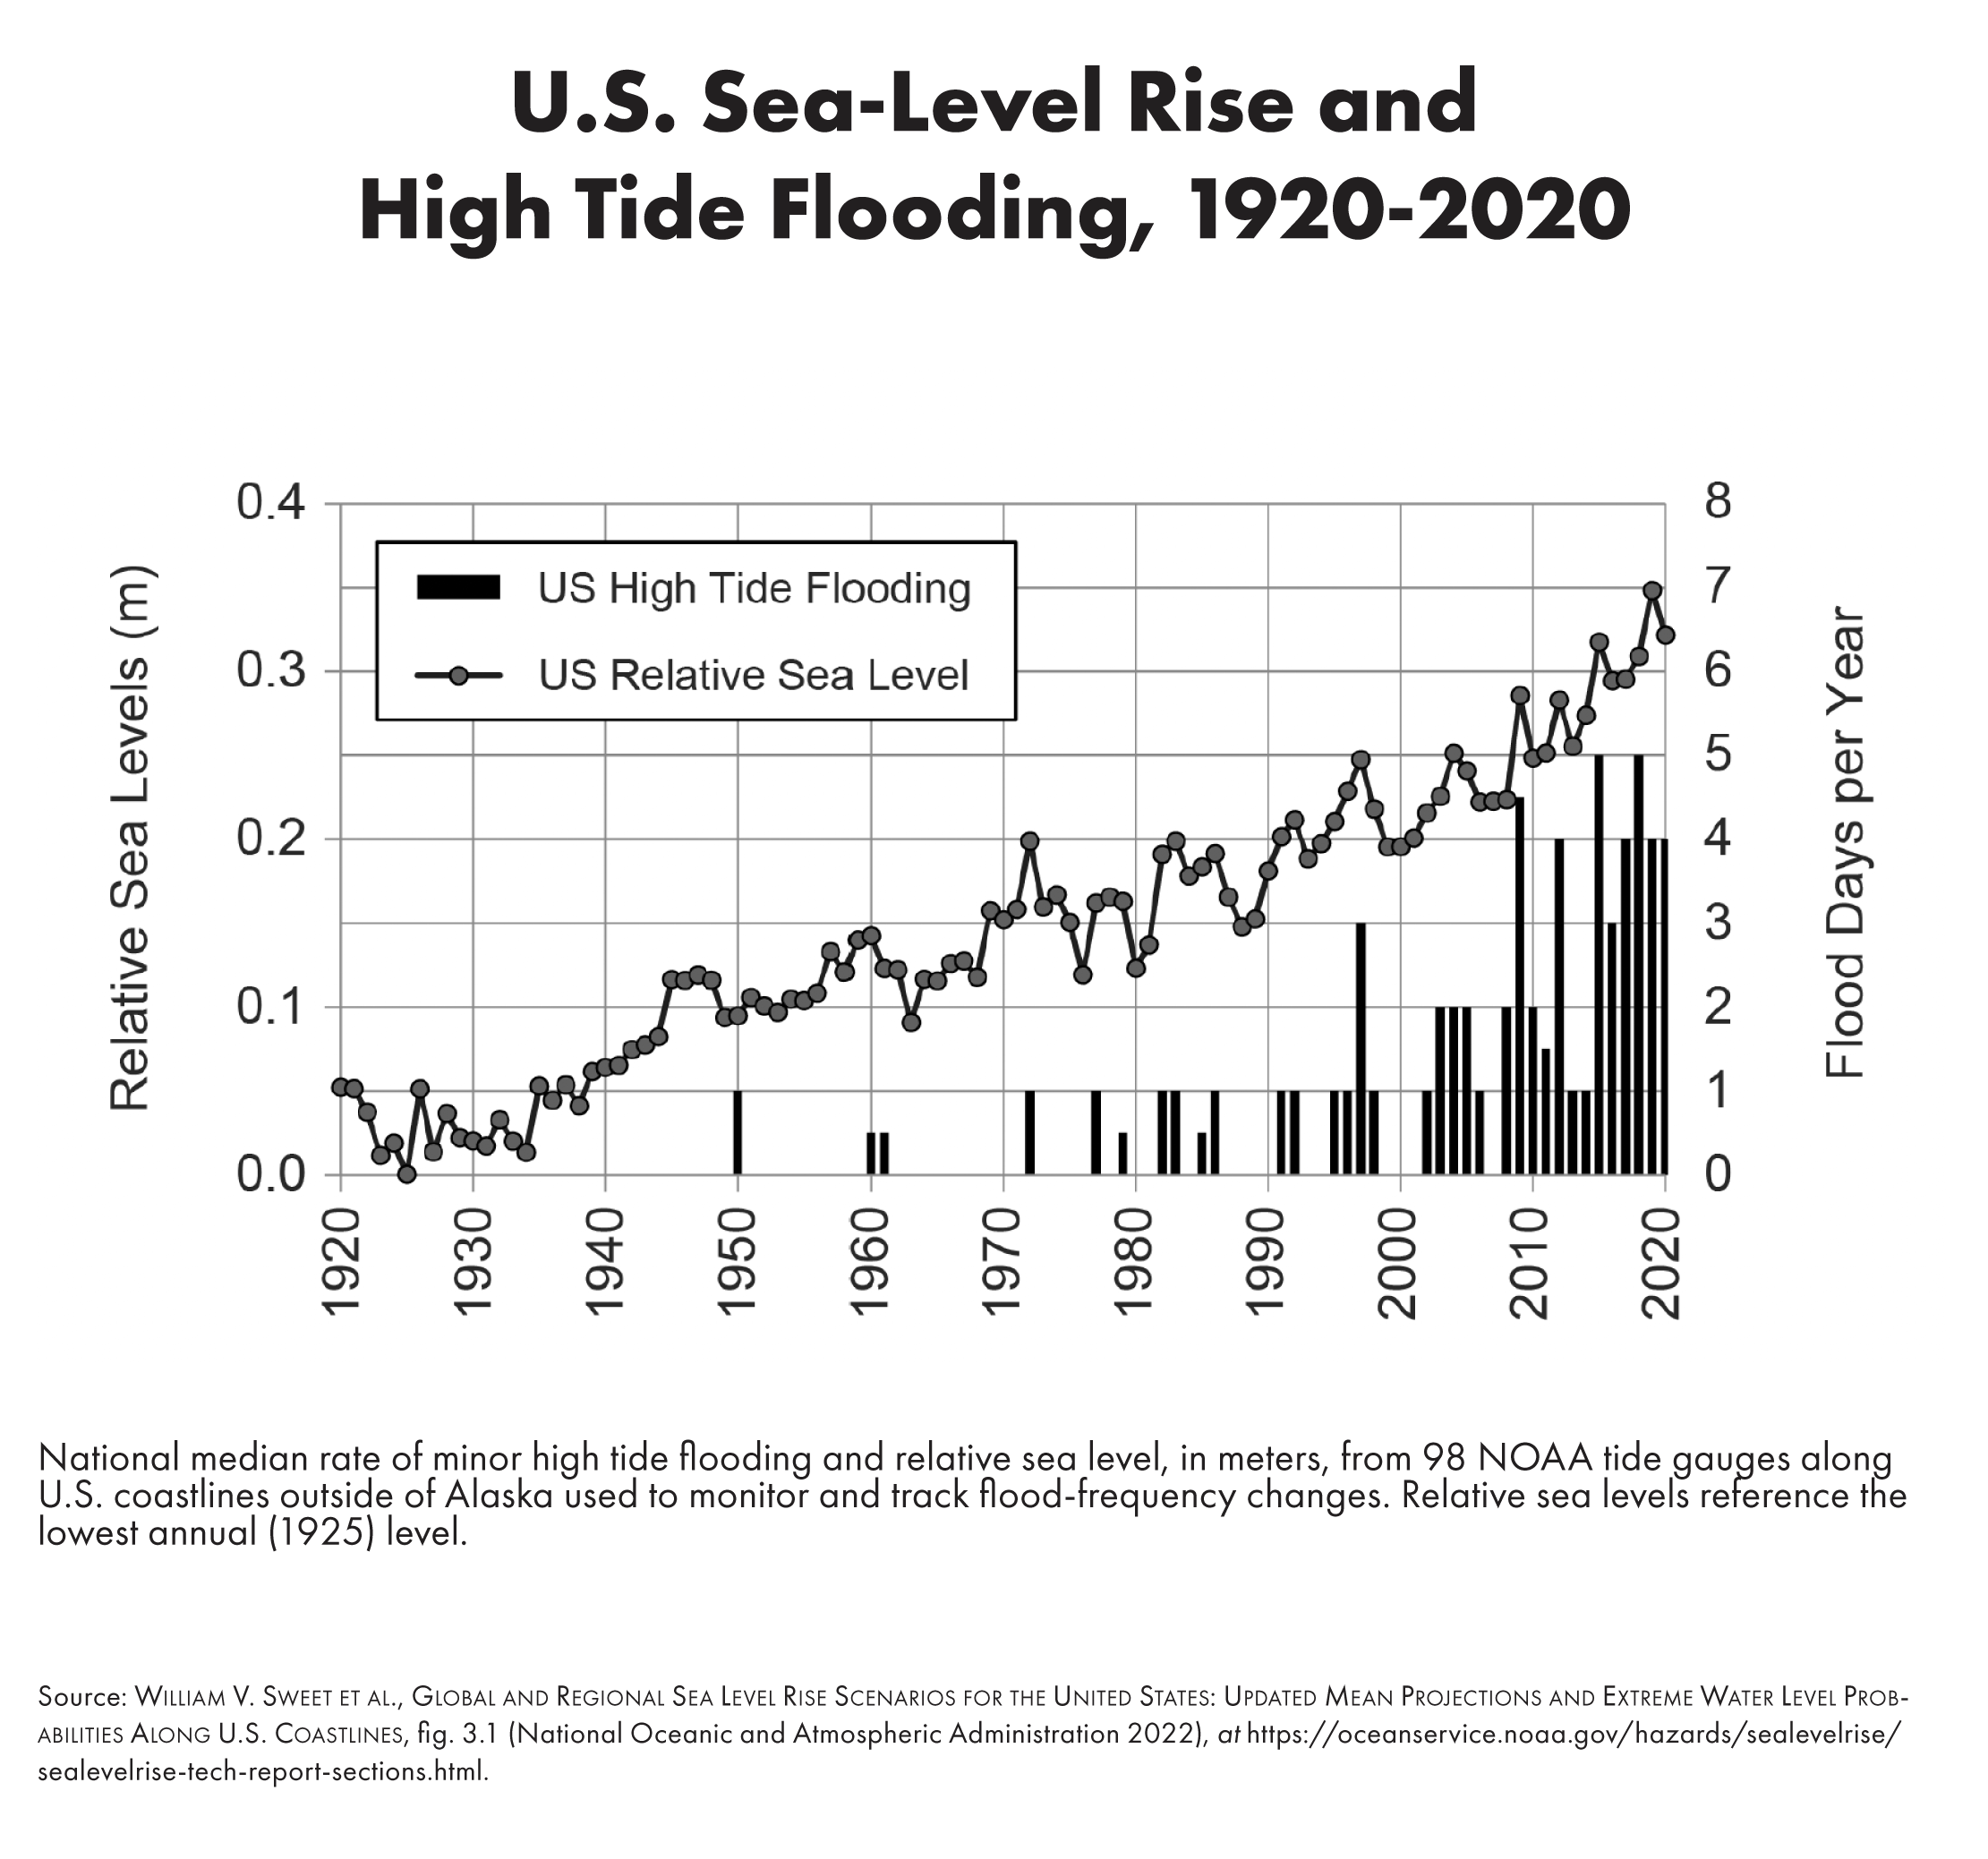 U.S. Sea-Level Rise and High Tide Flooding, 1920-2020